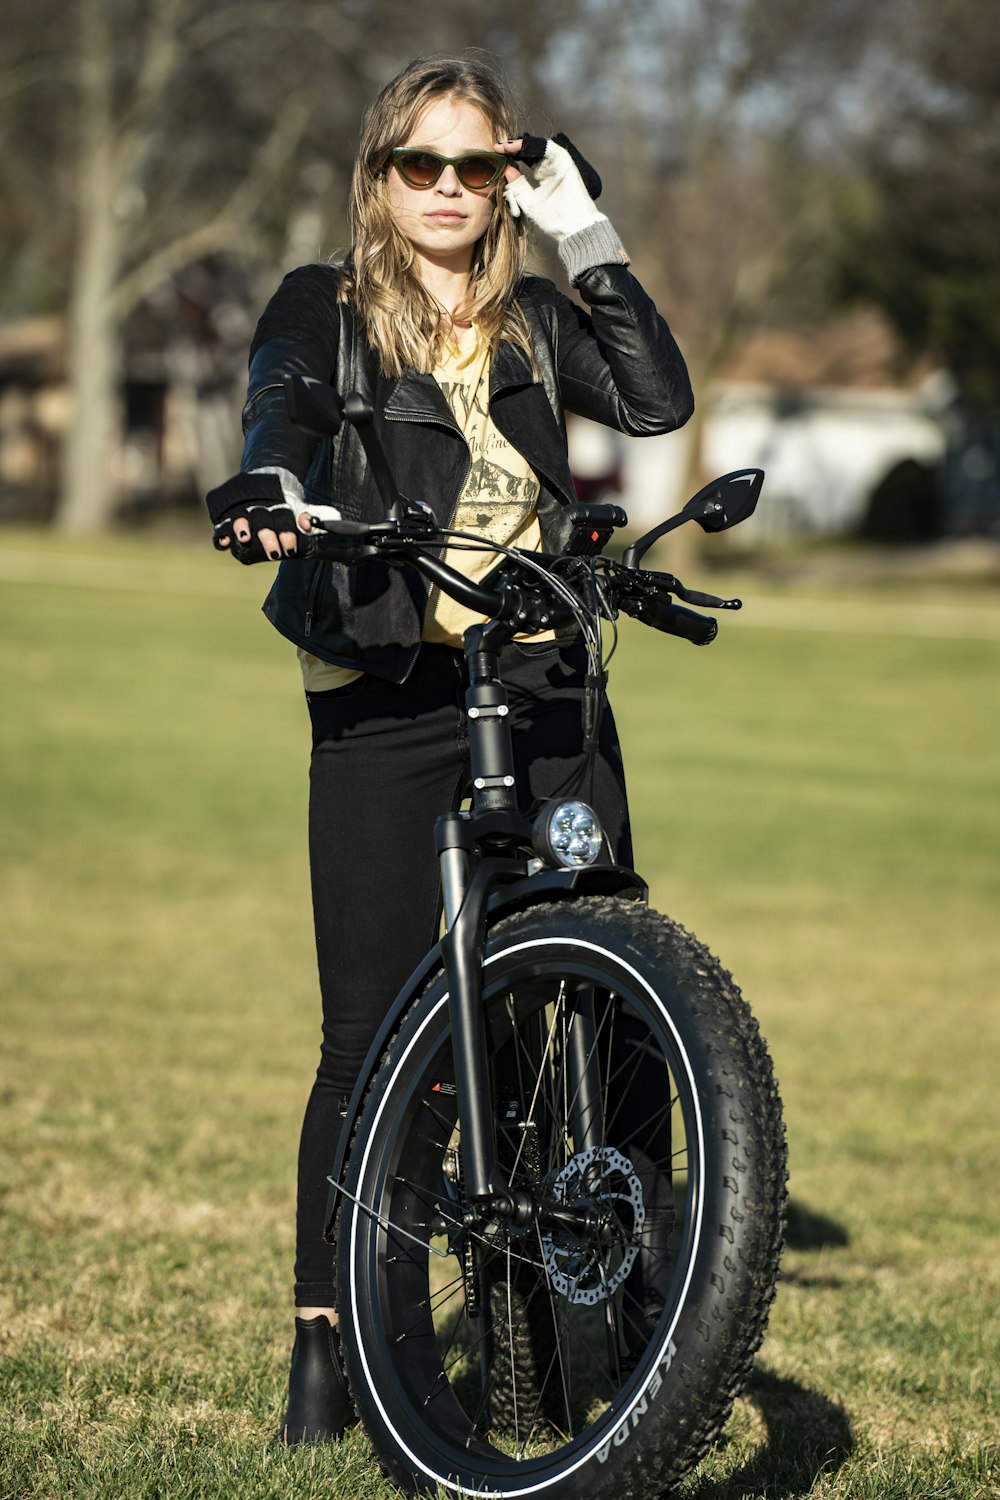 Femme en veste en cuir noir conduisant une moto noire pendant la journée